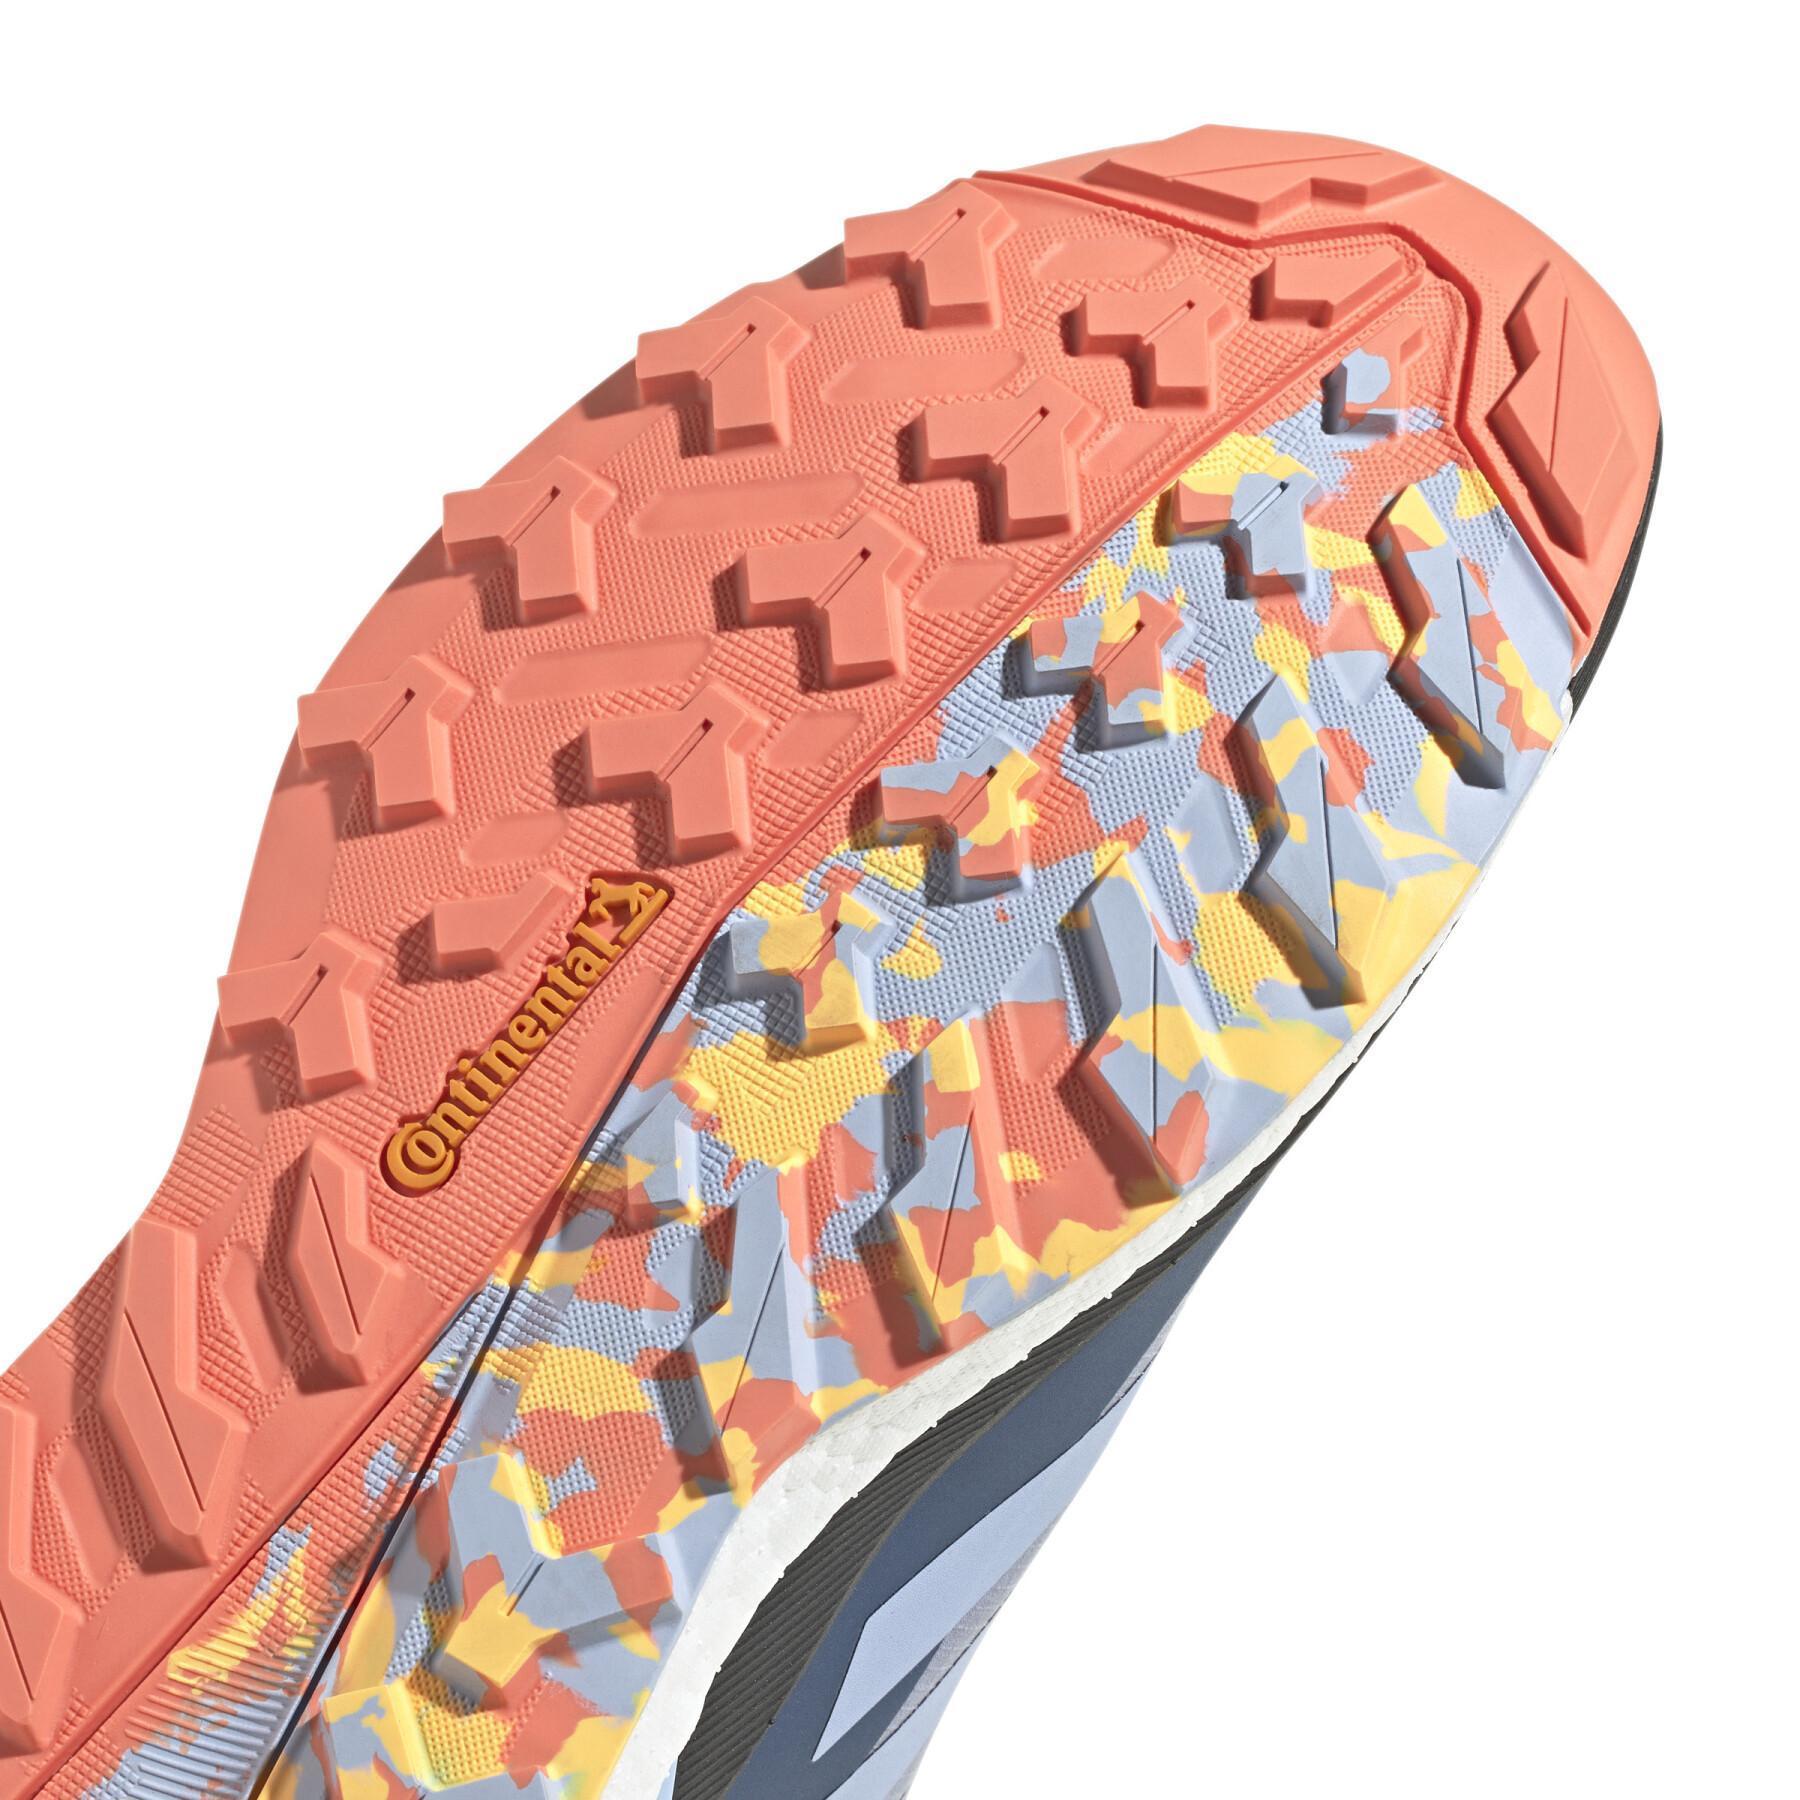 Zapatillas de senderismo adidas Terrex Free Hiker GORE-TEX 2.0